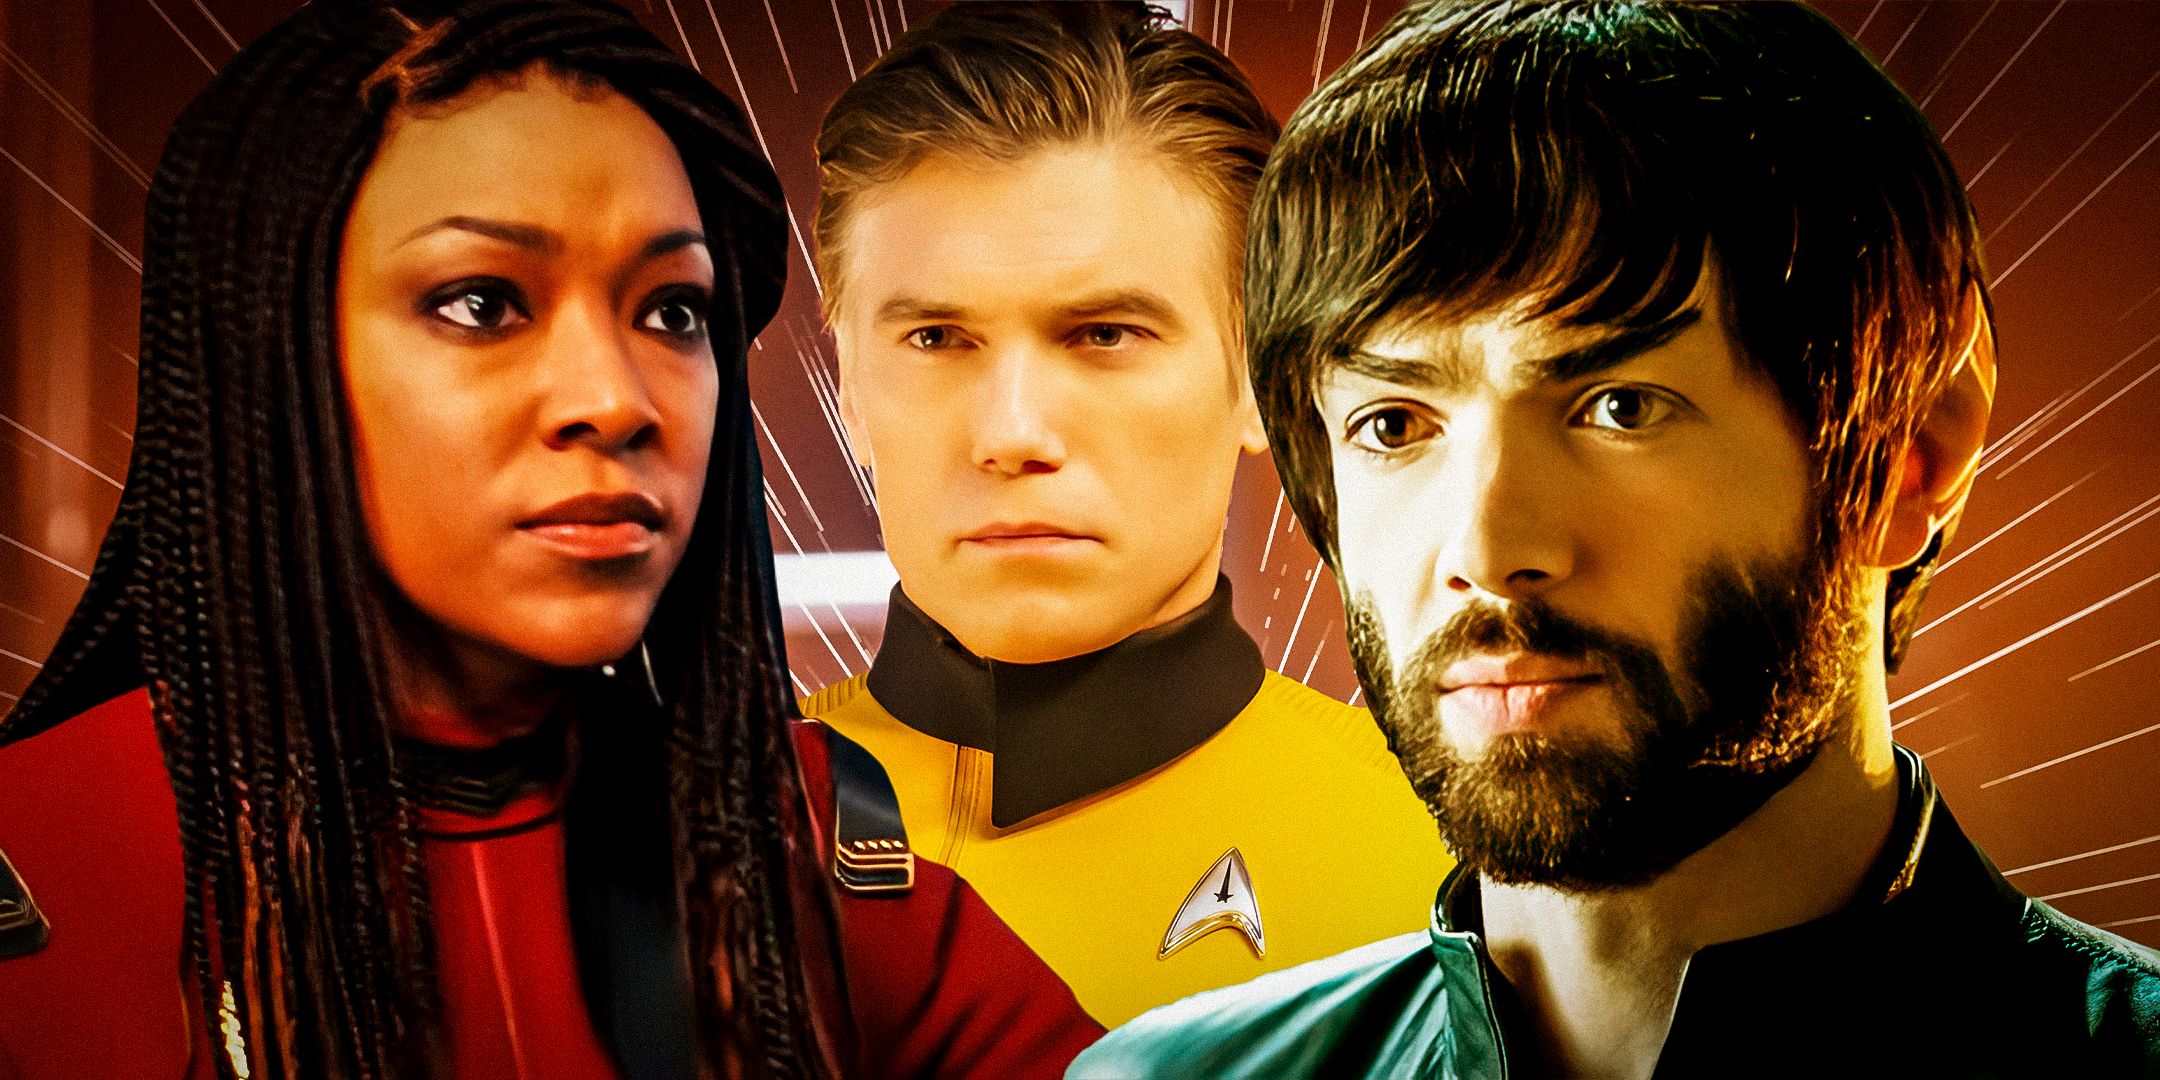 Commander Burnham (Sonequa Martin-Green), Captain Pike (Anson Mount), and Spock (Ethan Peck) in Star Trek: Discovery.